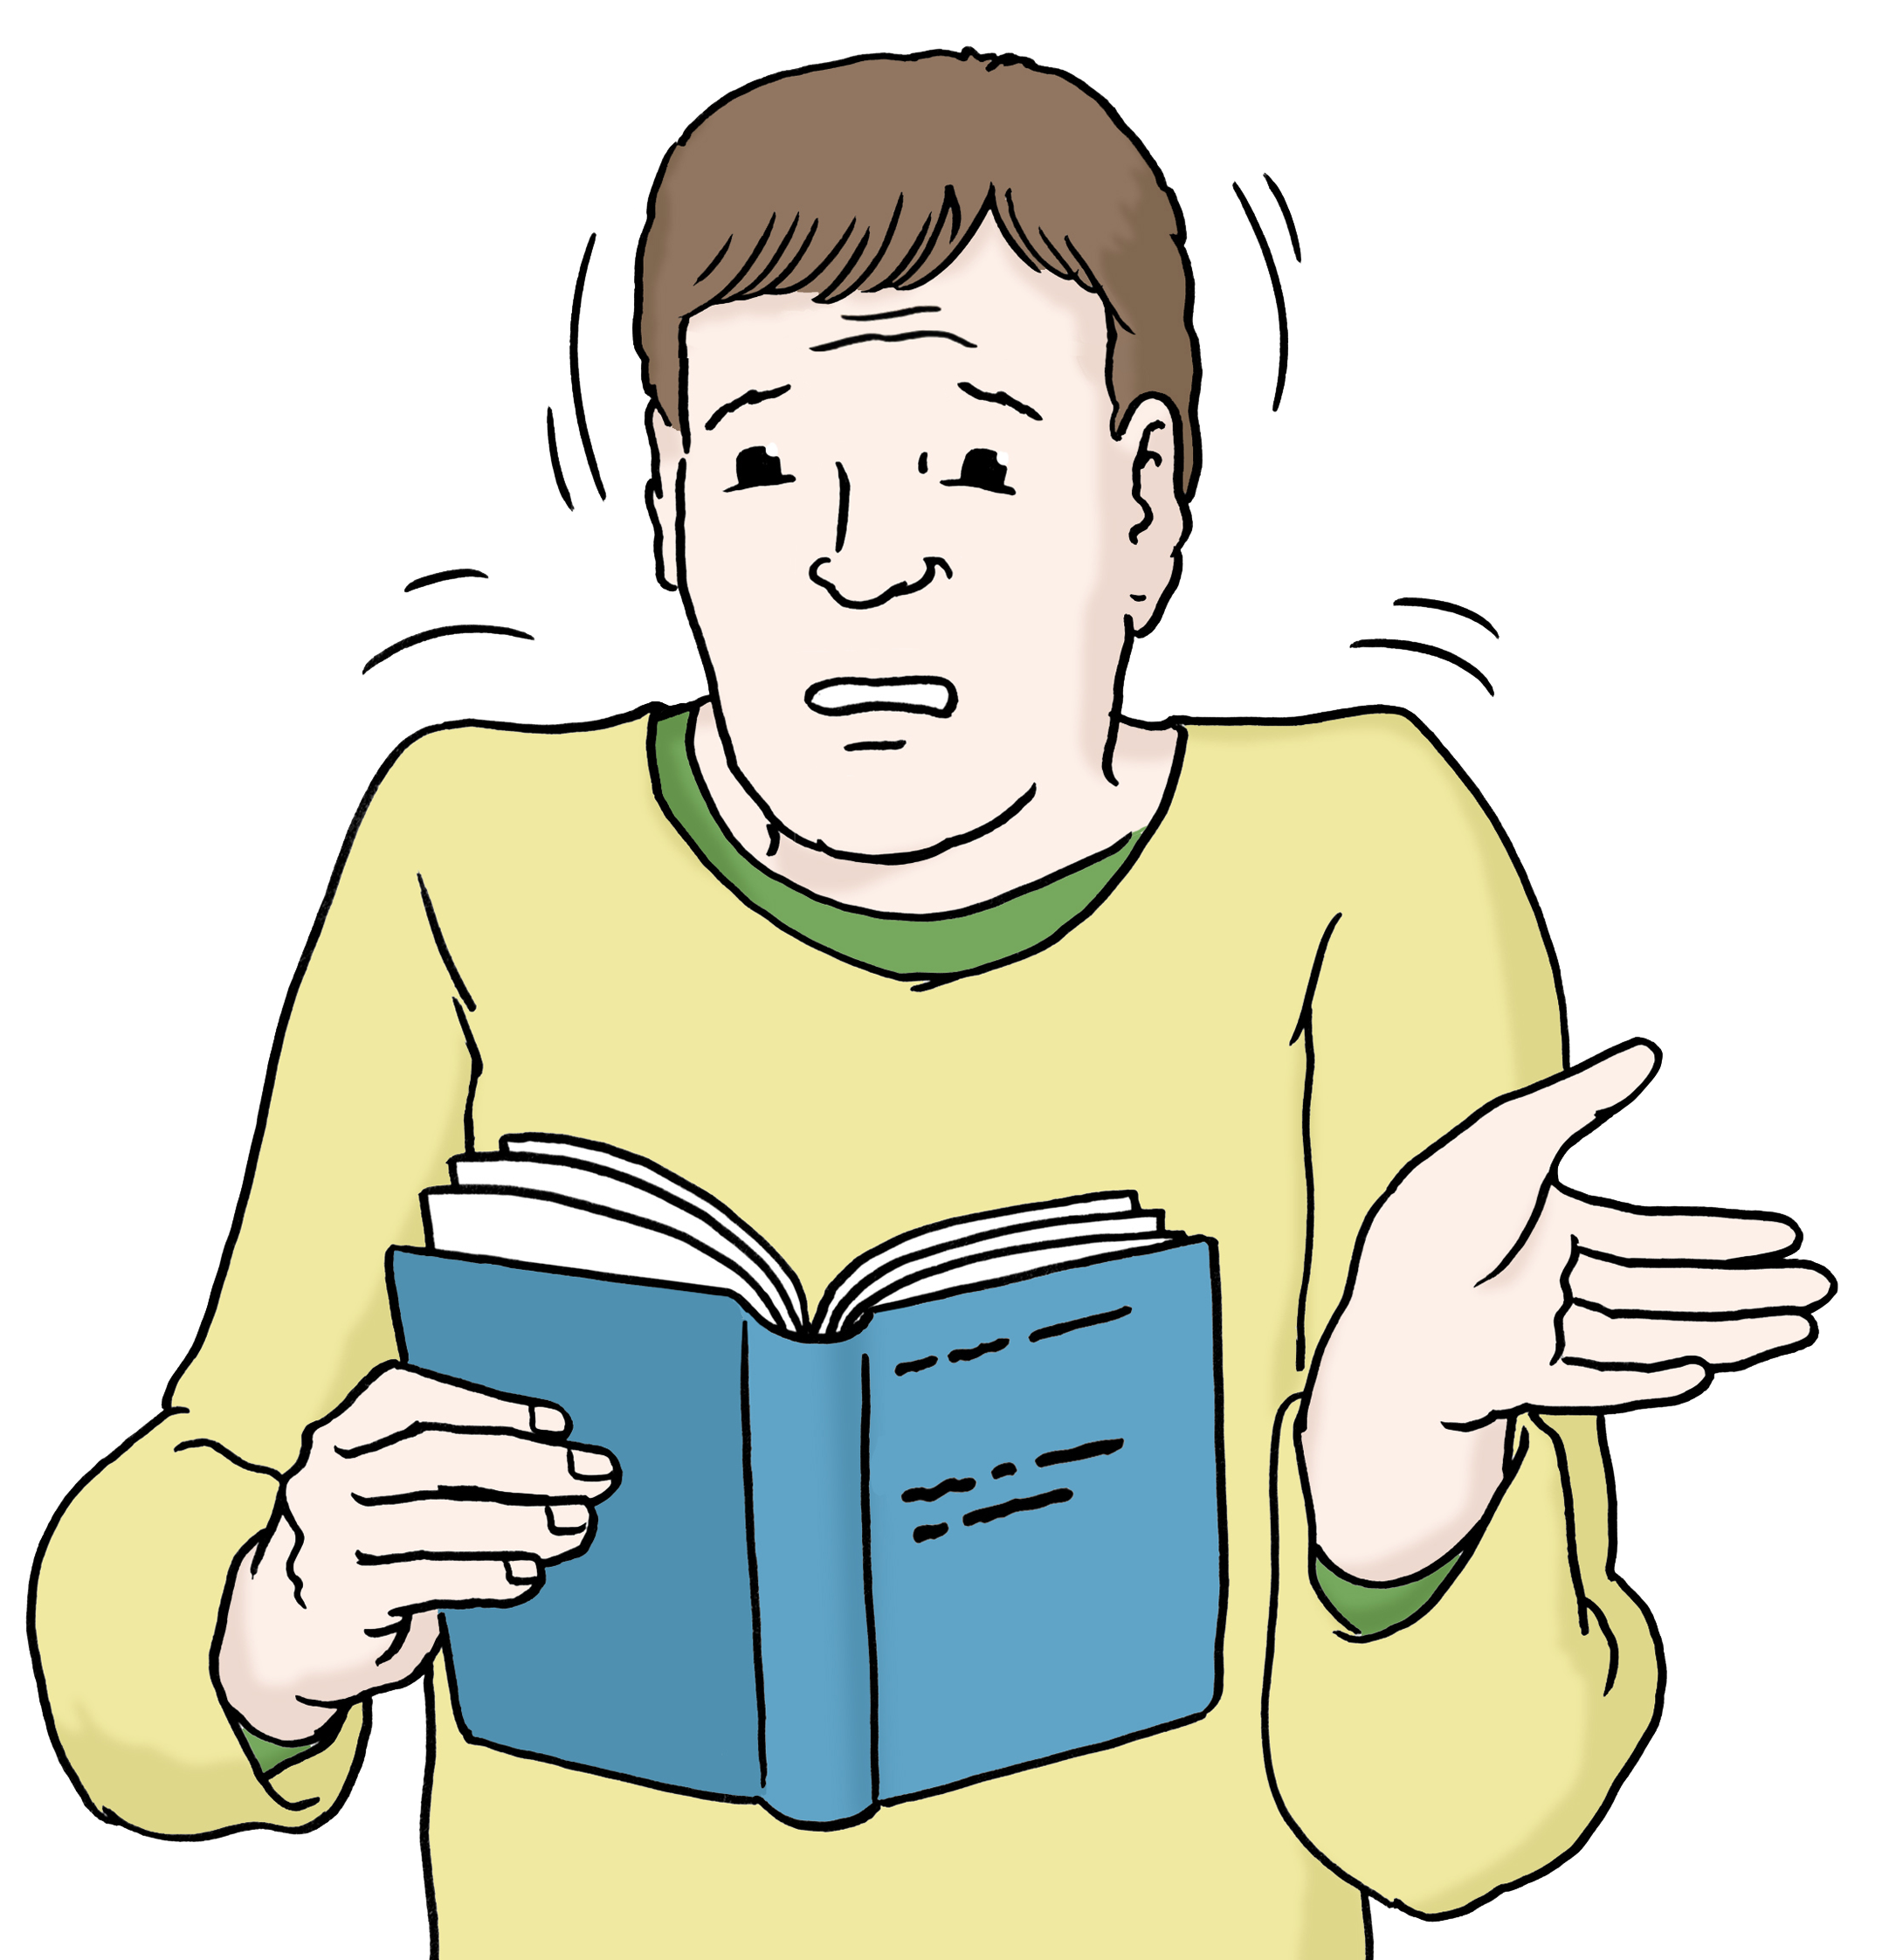 Zeichnung eines Mannes, der ein Buch in den Händen hält und den Inhalt nicht zu verstehen scheint.